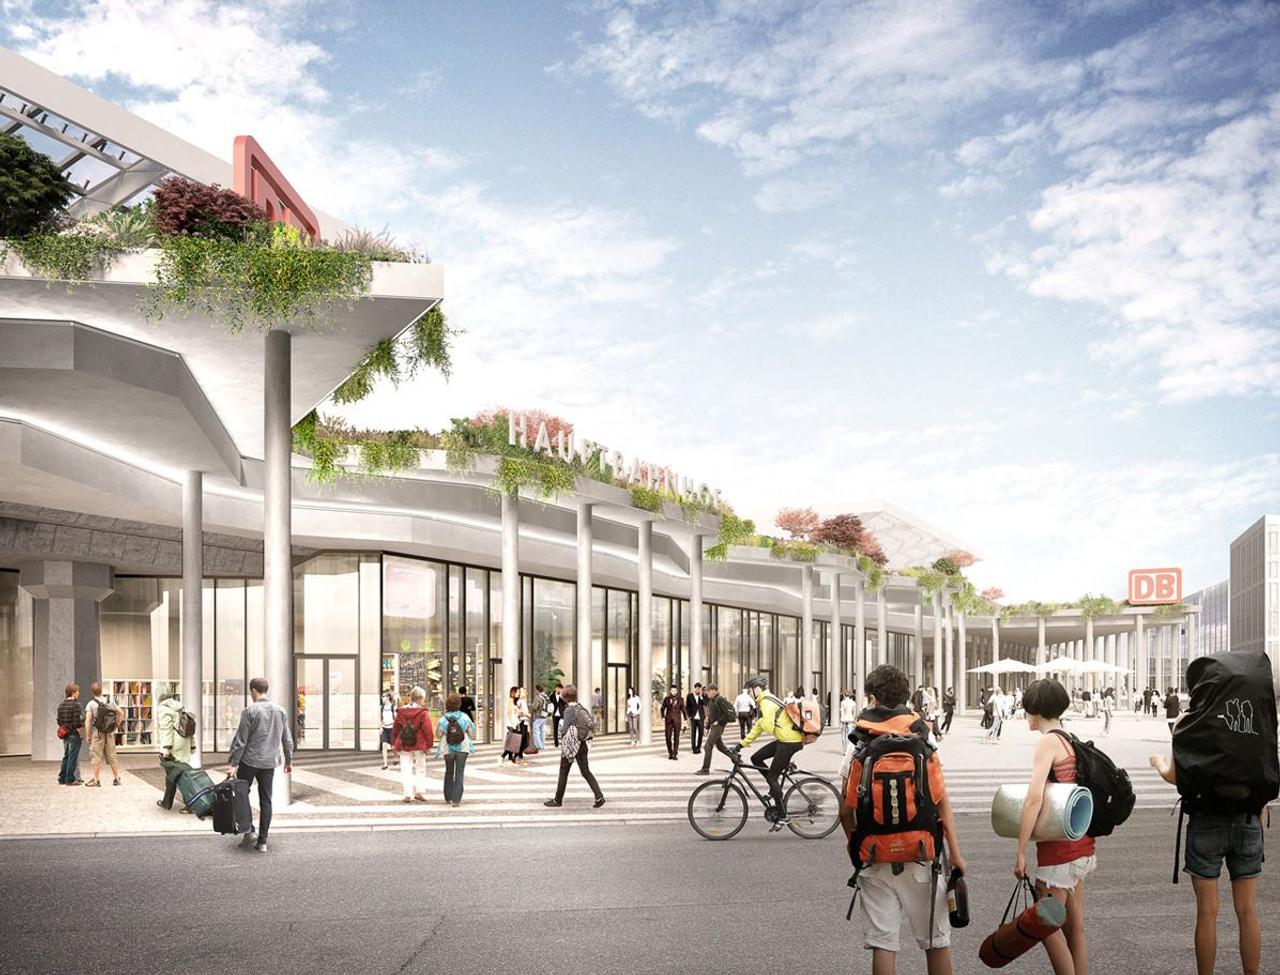 Вокзал будущего: архитектор Дж. Майер Х проектирует новый железнодорожный вокзал Кельна